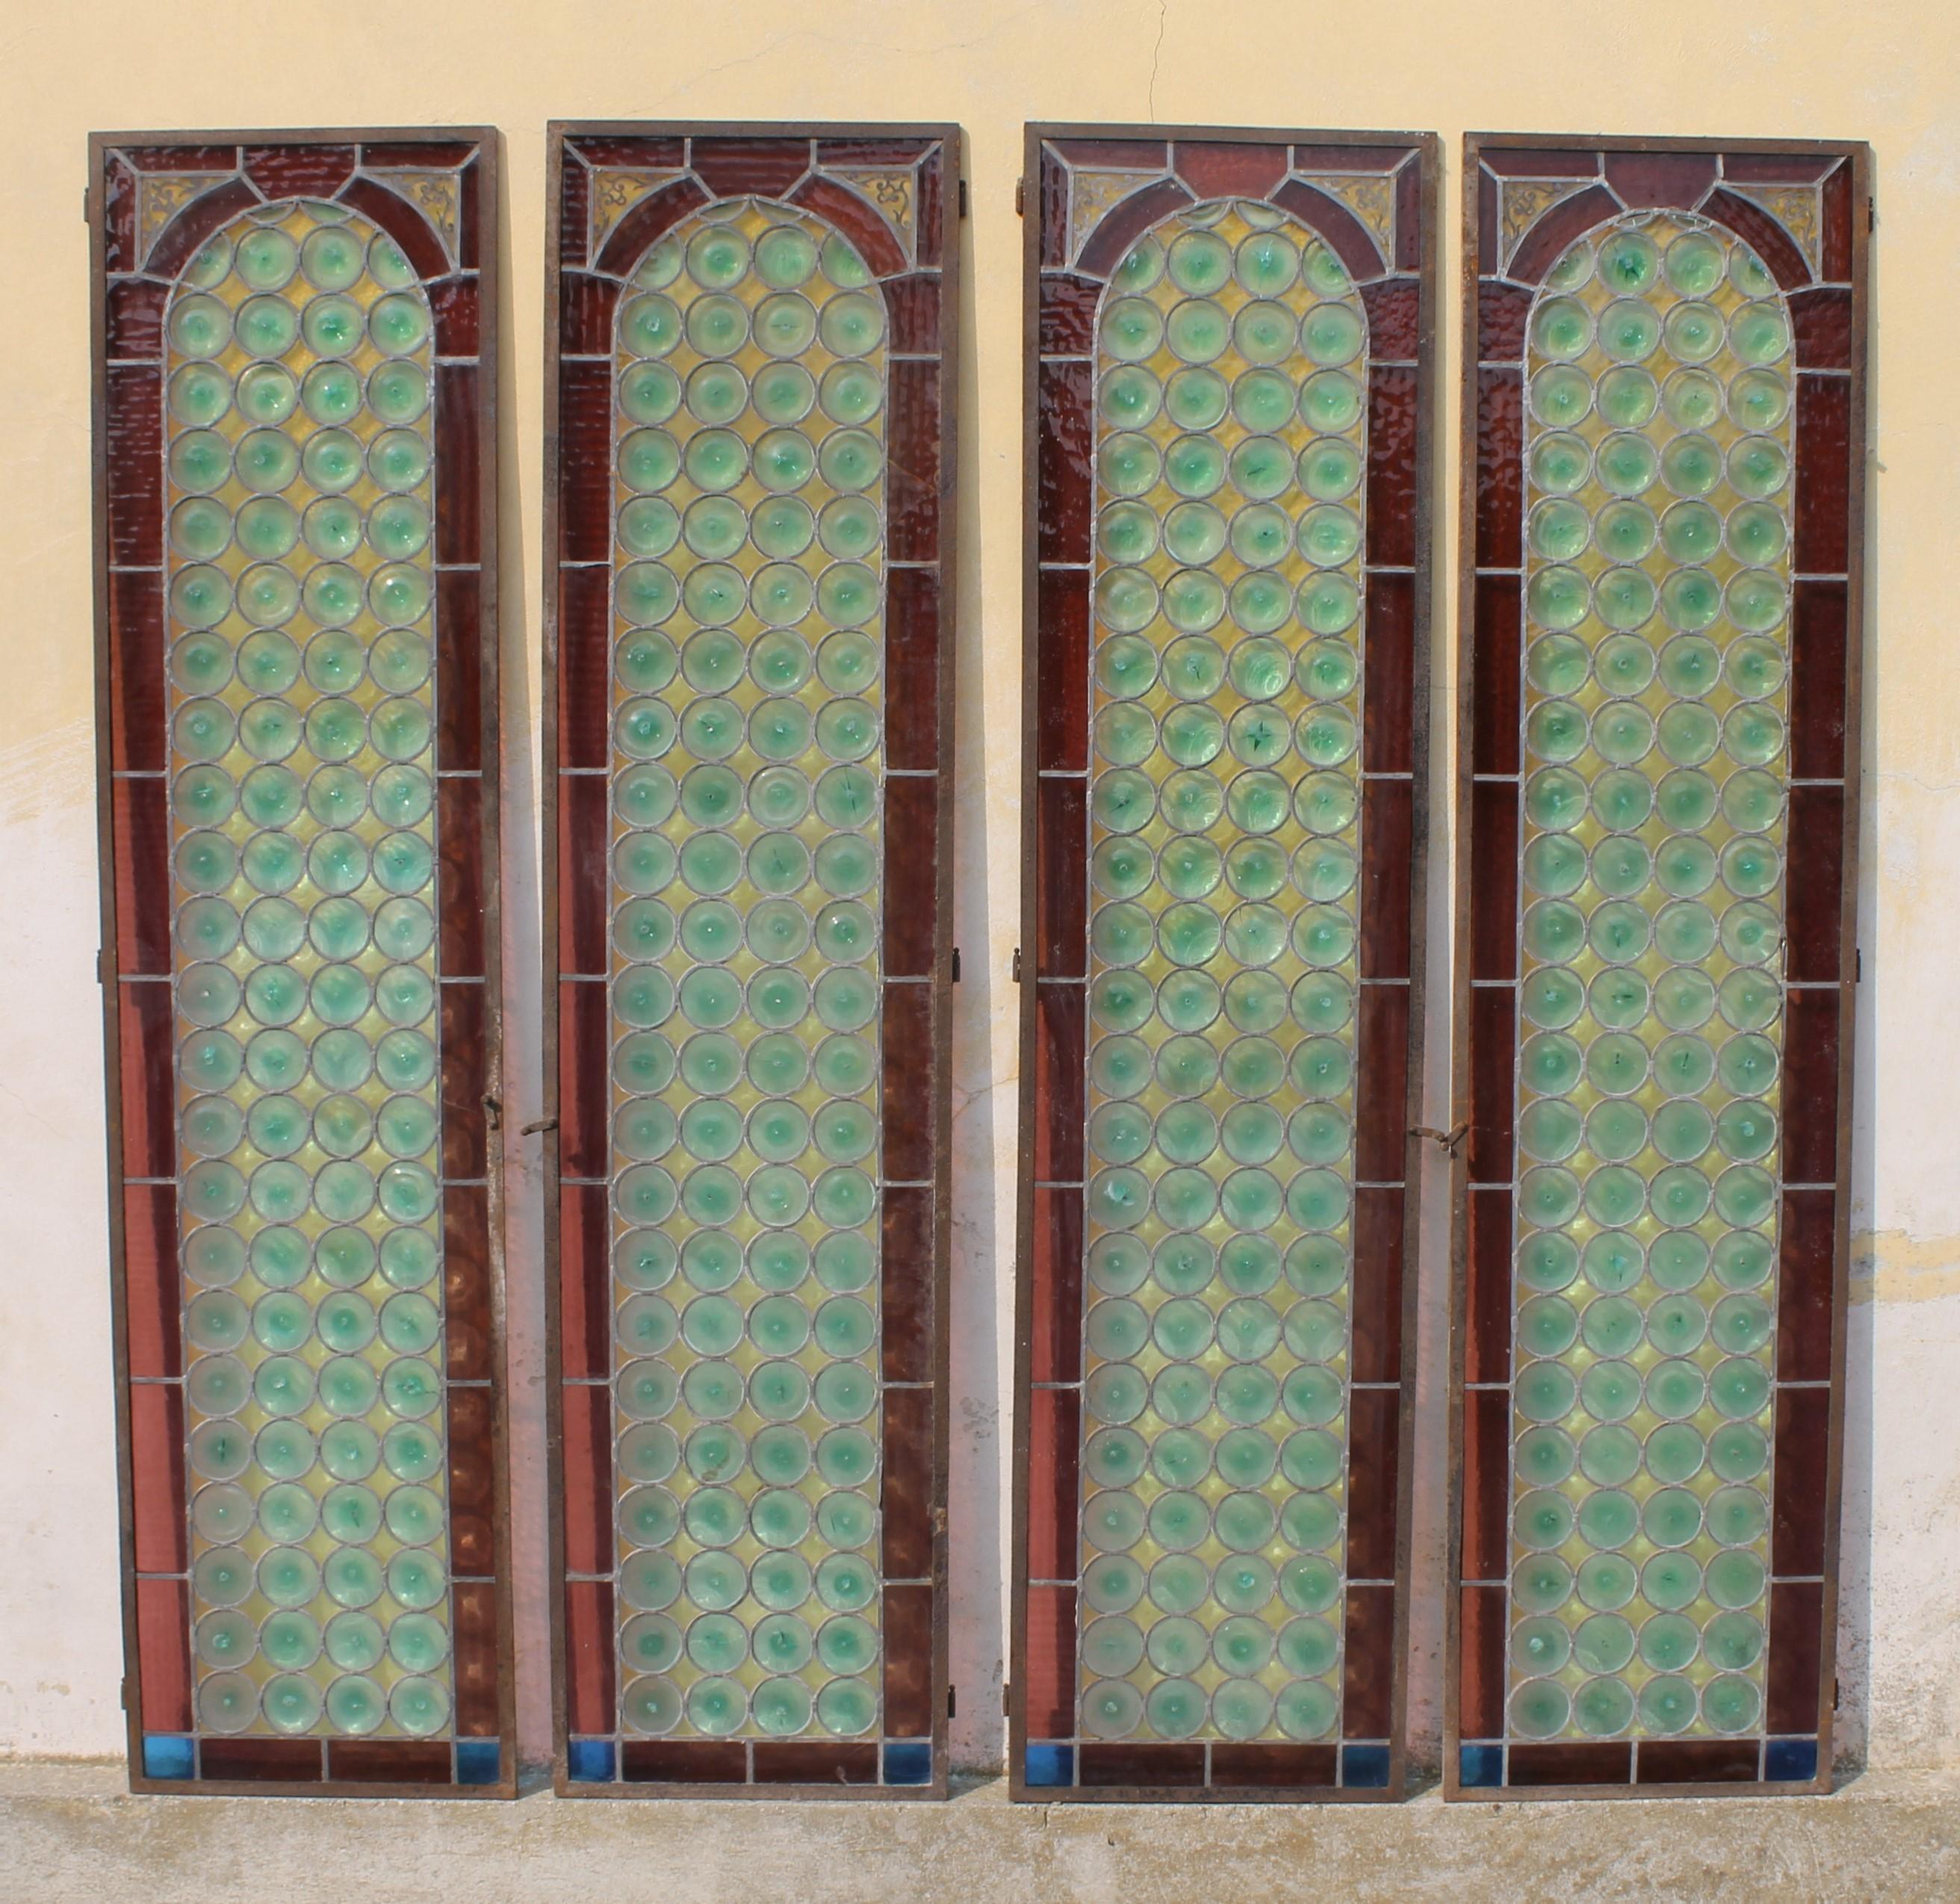 Ensemble de quatre panneaux de vitraux italiens pour portes et fenêtres, Italie 1890 circa

Dimensions : Chaque porte/panneau mesure cm. 210,5, largeur cm. 51 et un peu moins de cm. 2 d'épaisseur.